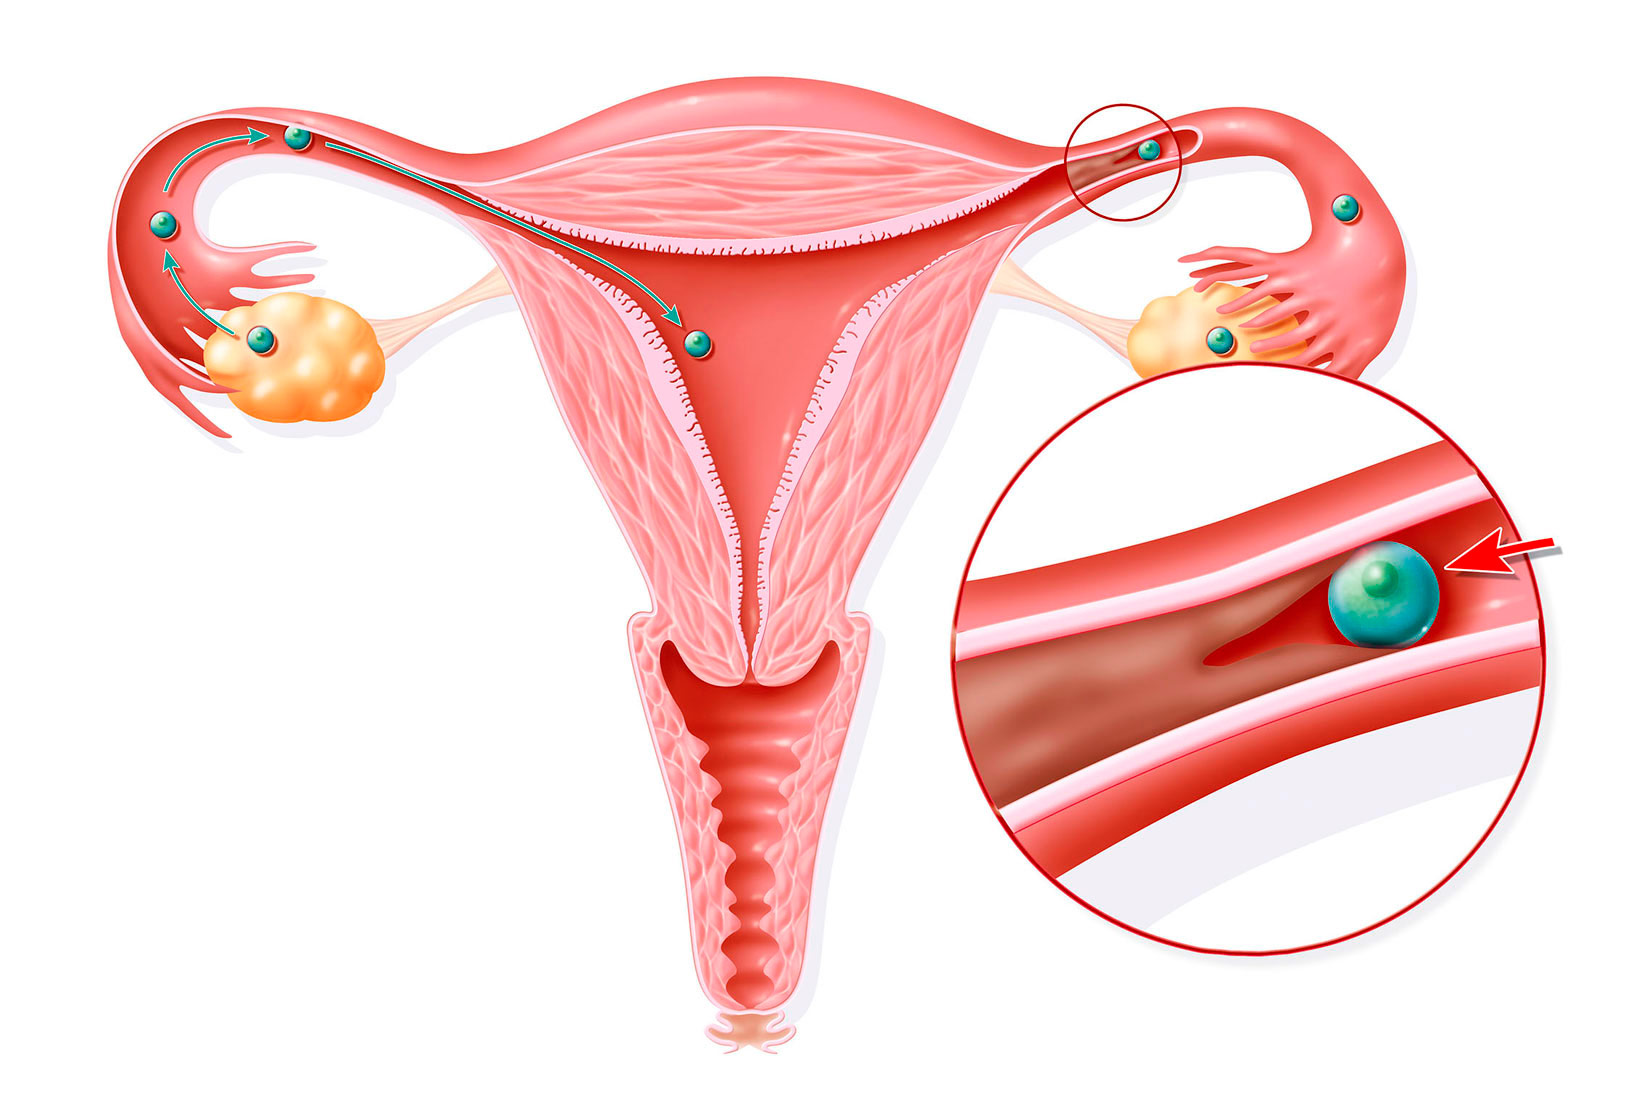 Na slici je prikazan presjek ženskog spolnog organa gdje se vidi da je u jajovodu prisutna smeđa nakupina koja spriječava protok jajne stanice.